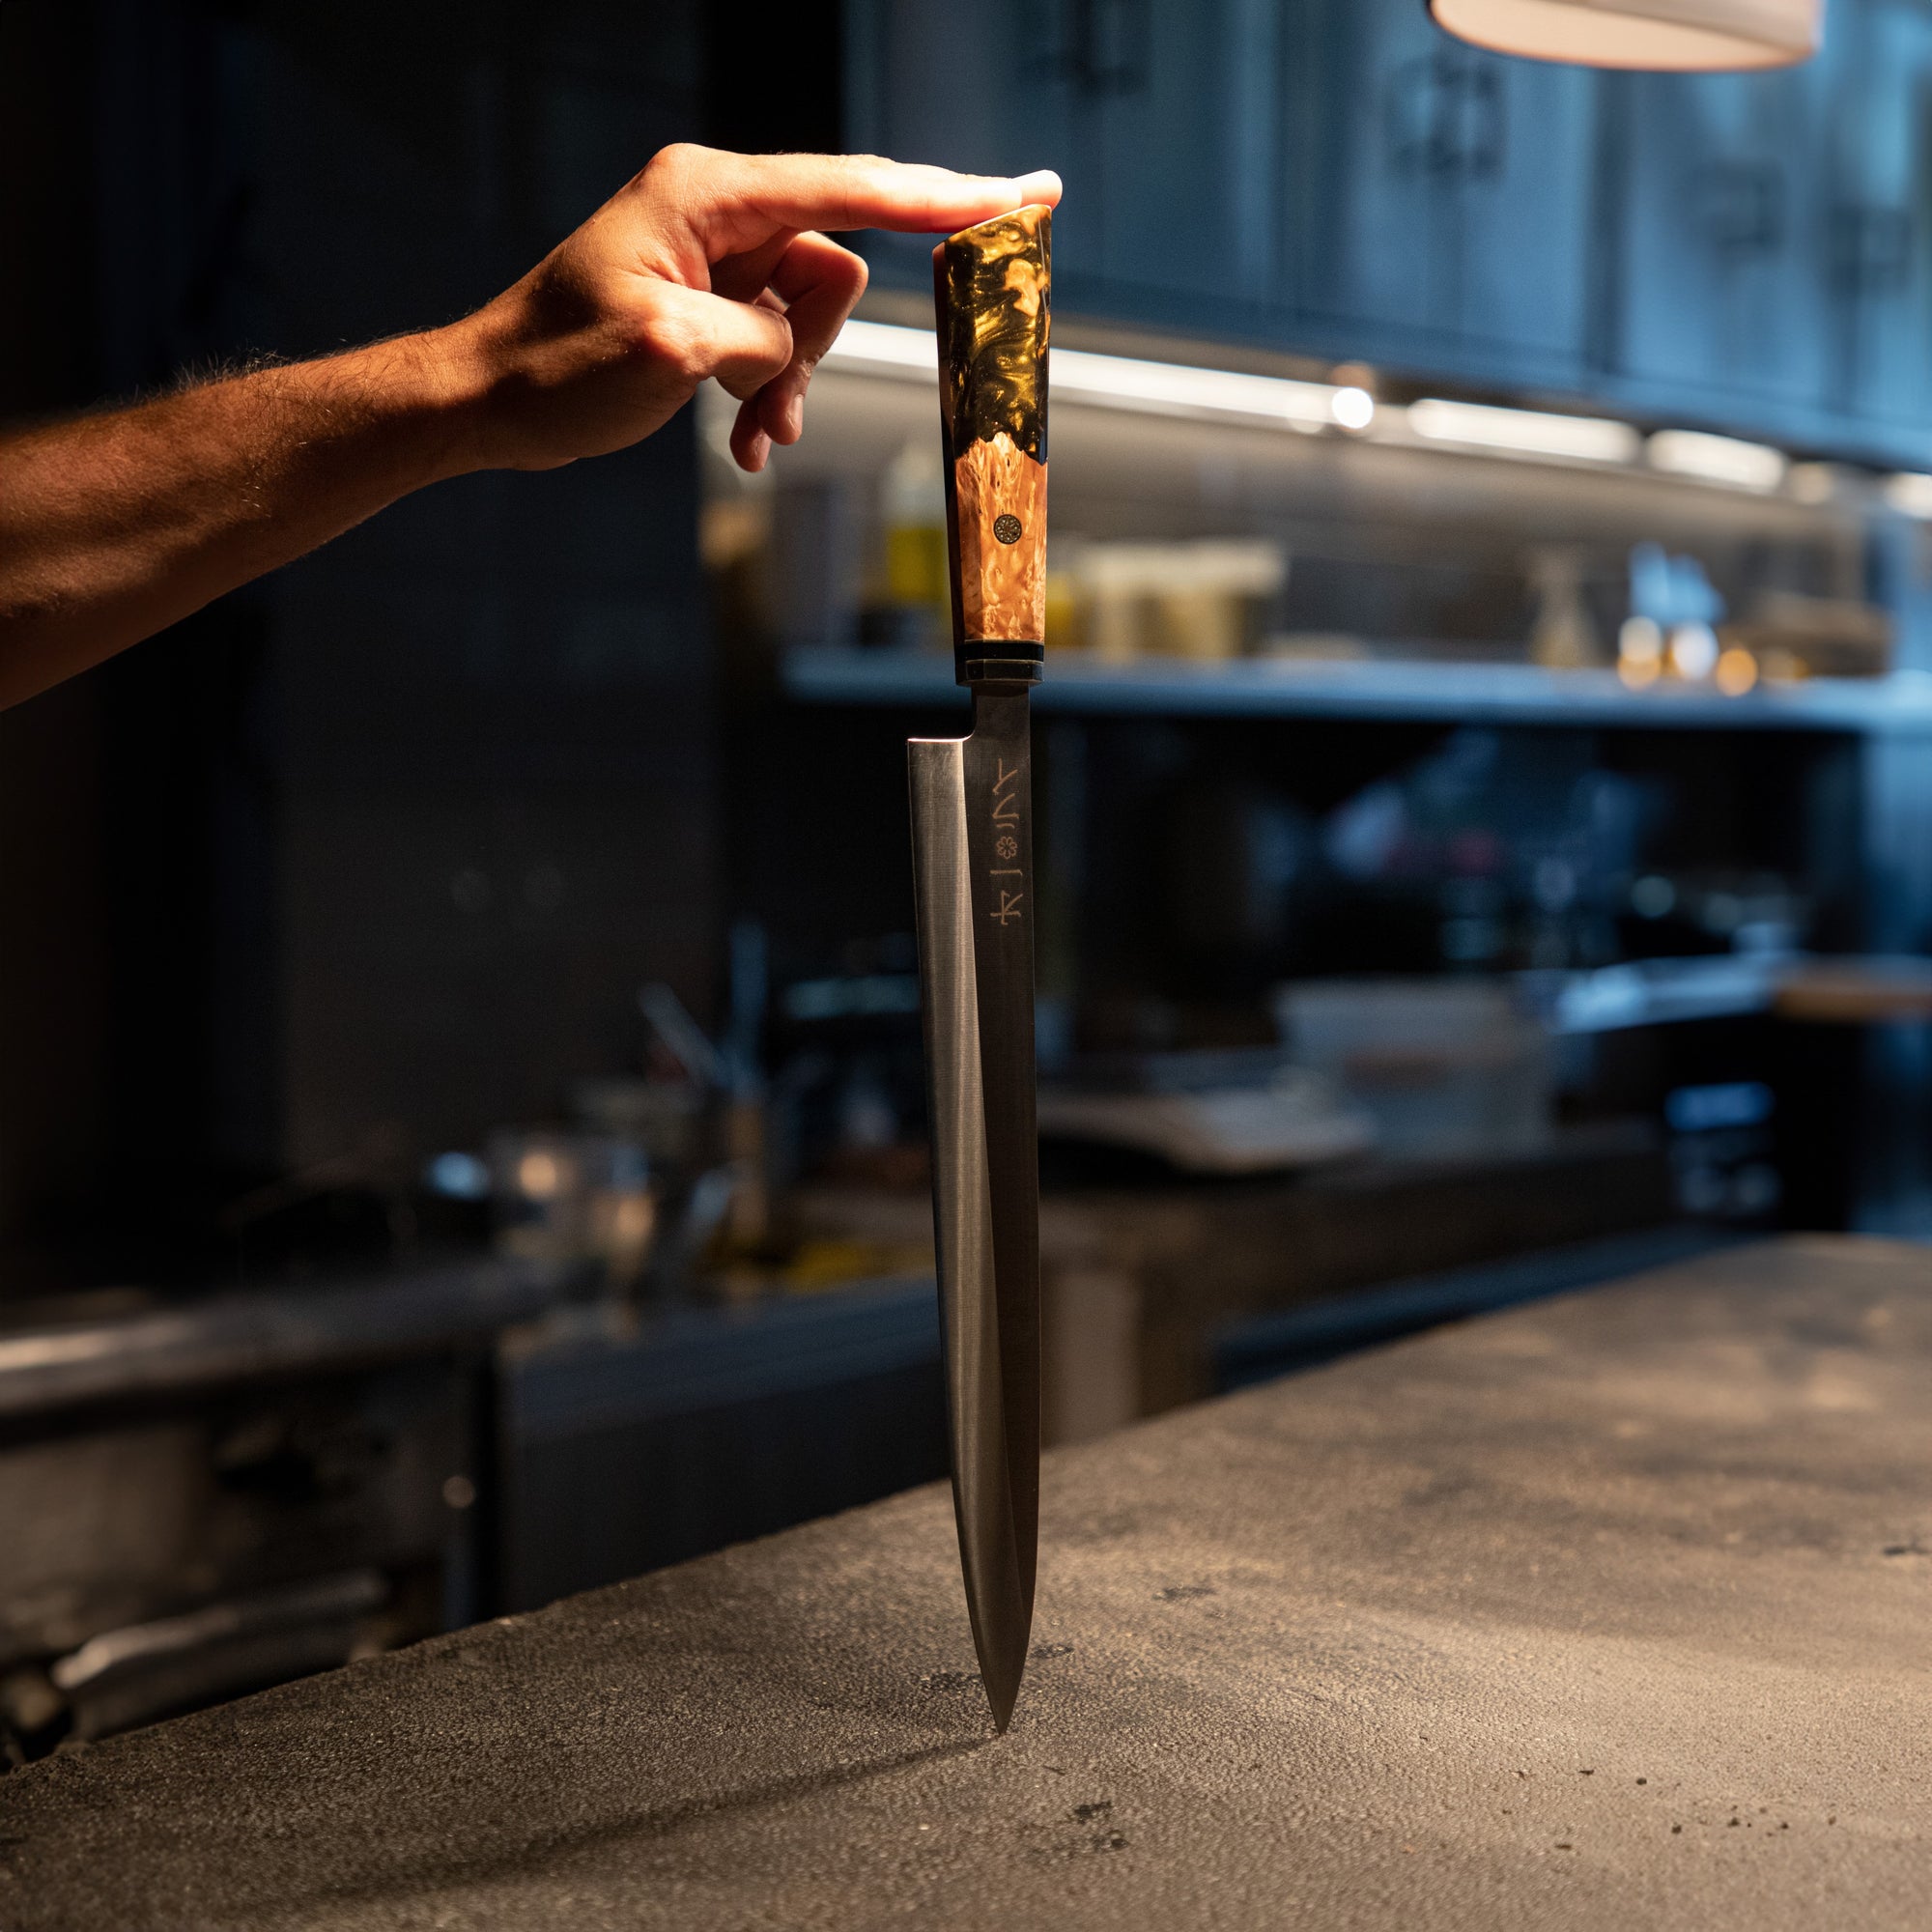 Cuchillo Yanagiba - All Right Chef tool's 28cm